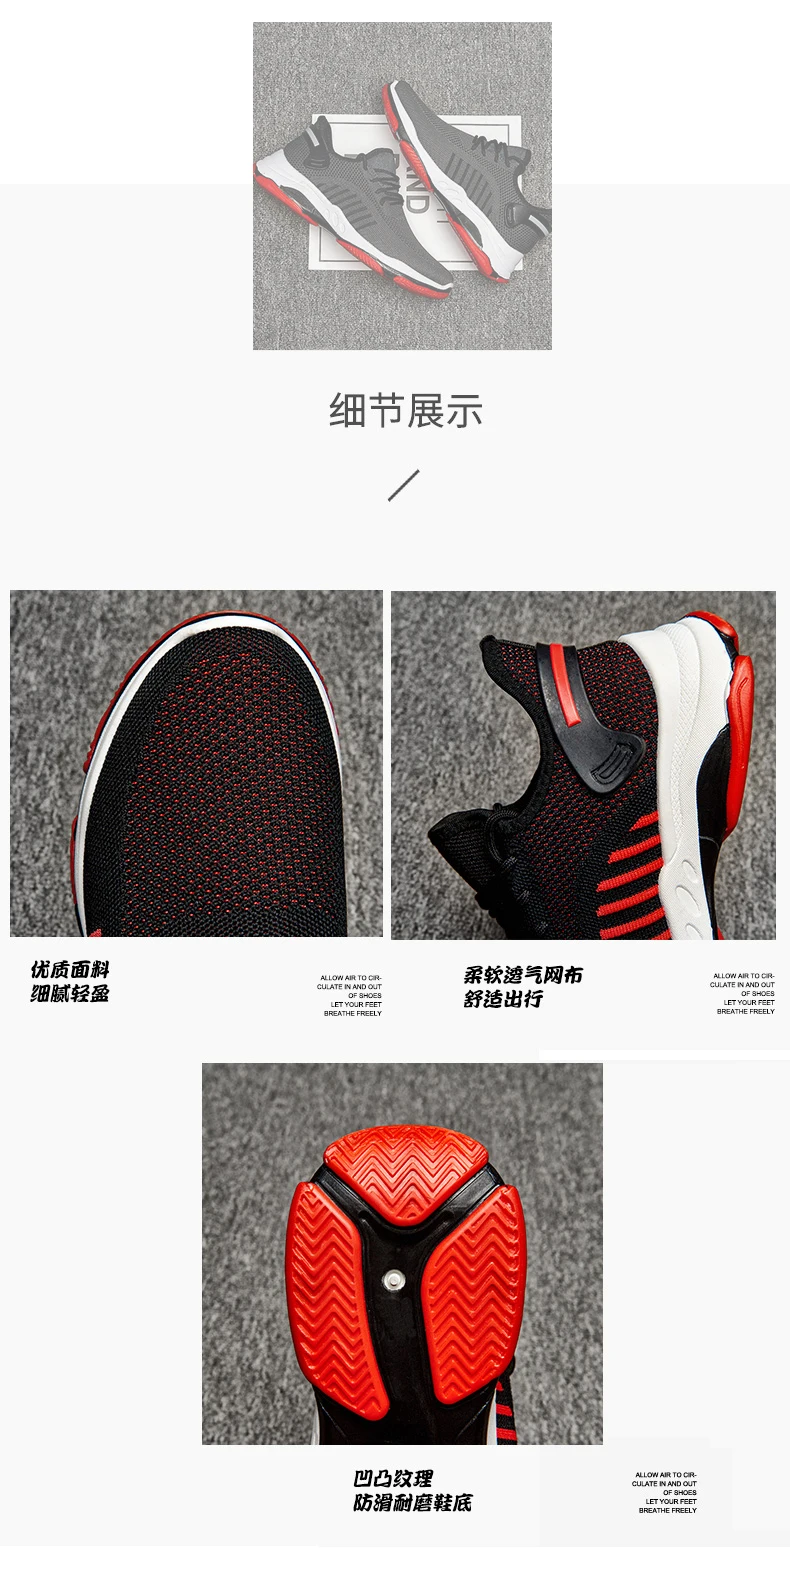 Tenis Masculino новые теннисные туфли мужские дышащие сетчатые спортивные мужские устойчивые спортивные кроссовки мужские кроссовки дешевая обувь